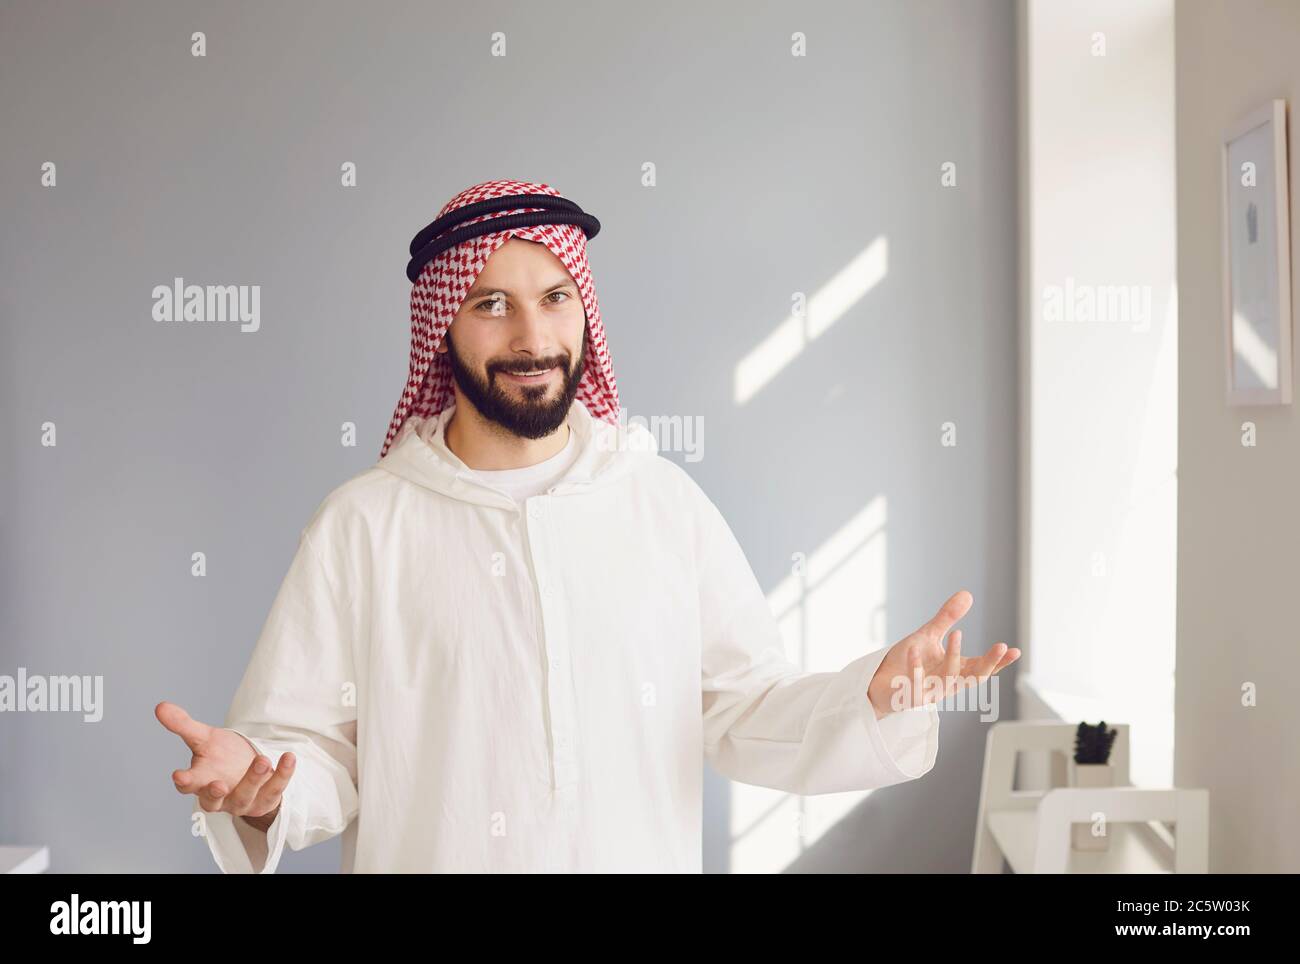 Arabischer männlicher Geschäftsmann lächelndes Porträt, das auf grauem Hintergrund steht Stockfoto